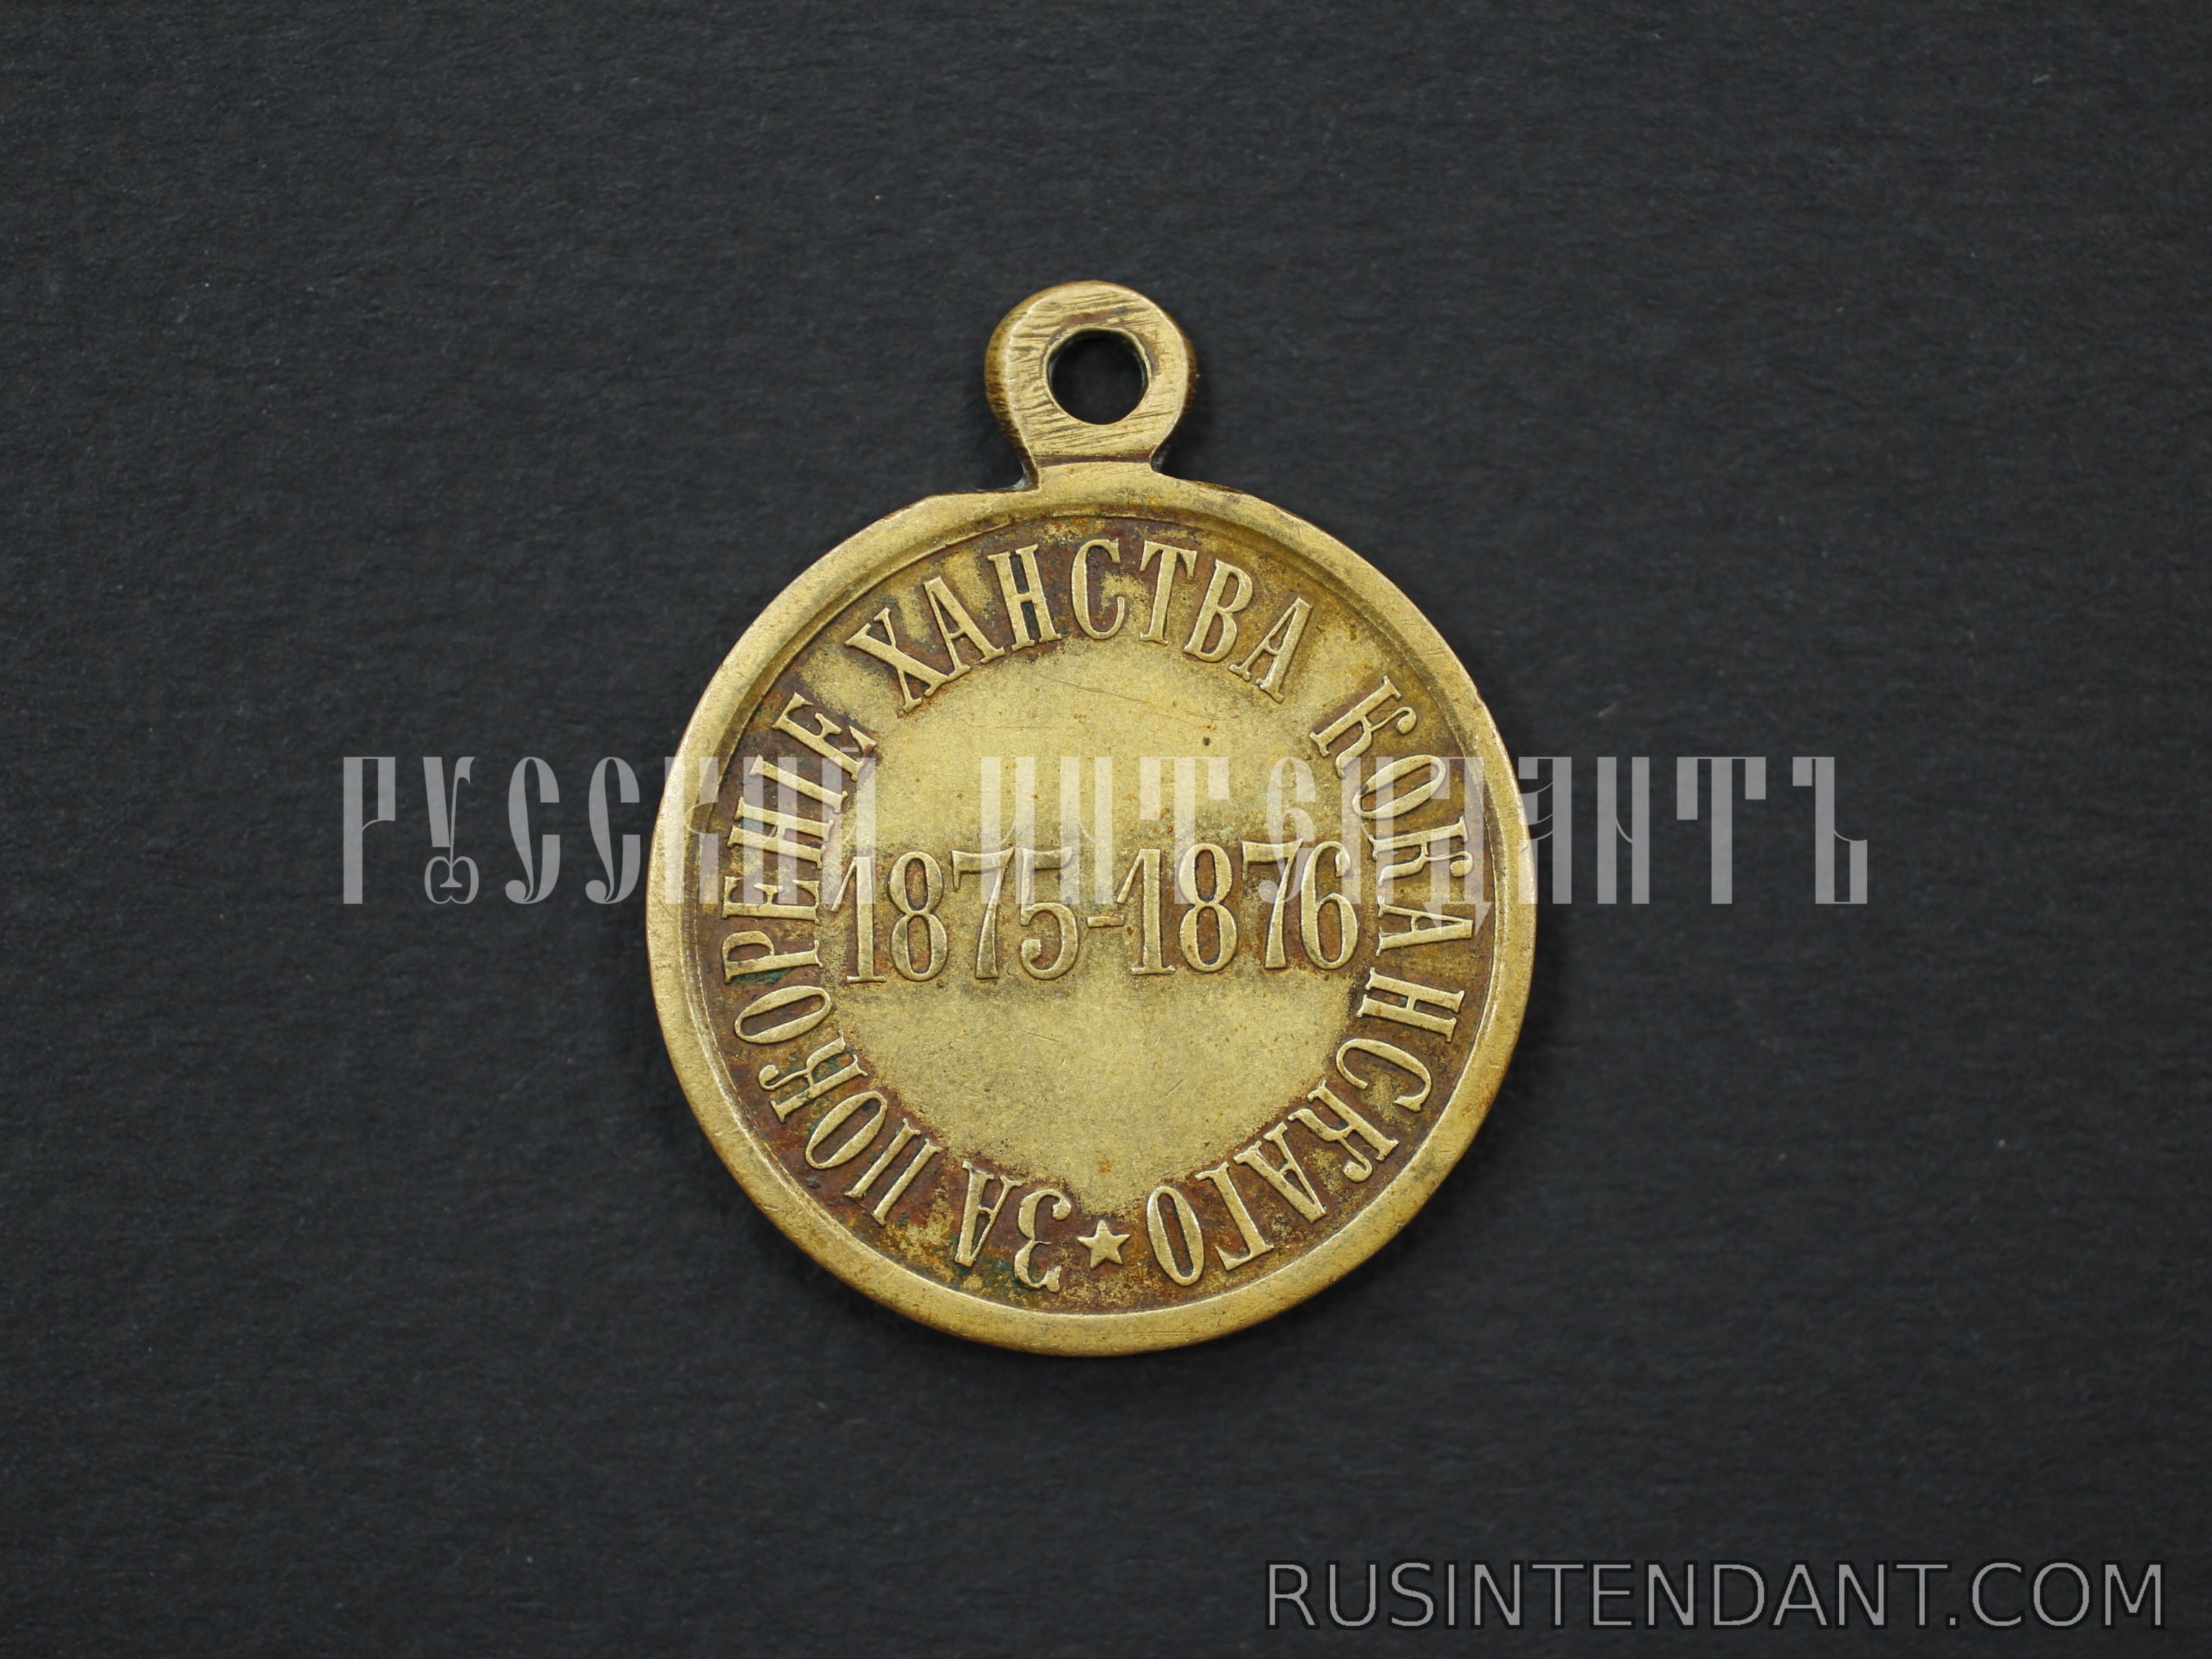 Фото 2: Медаль "За покорение Ханства Кокандского" 